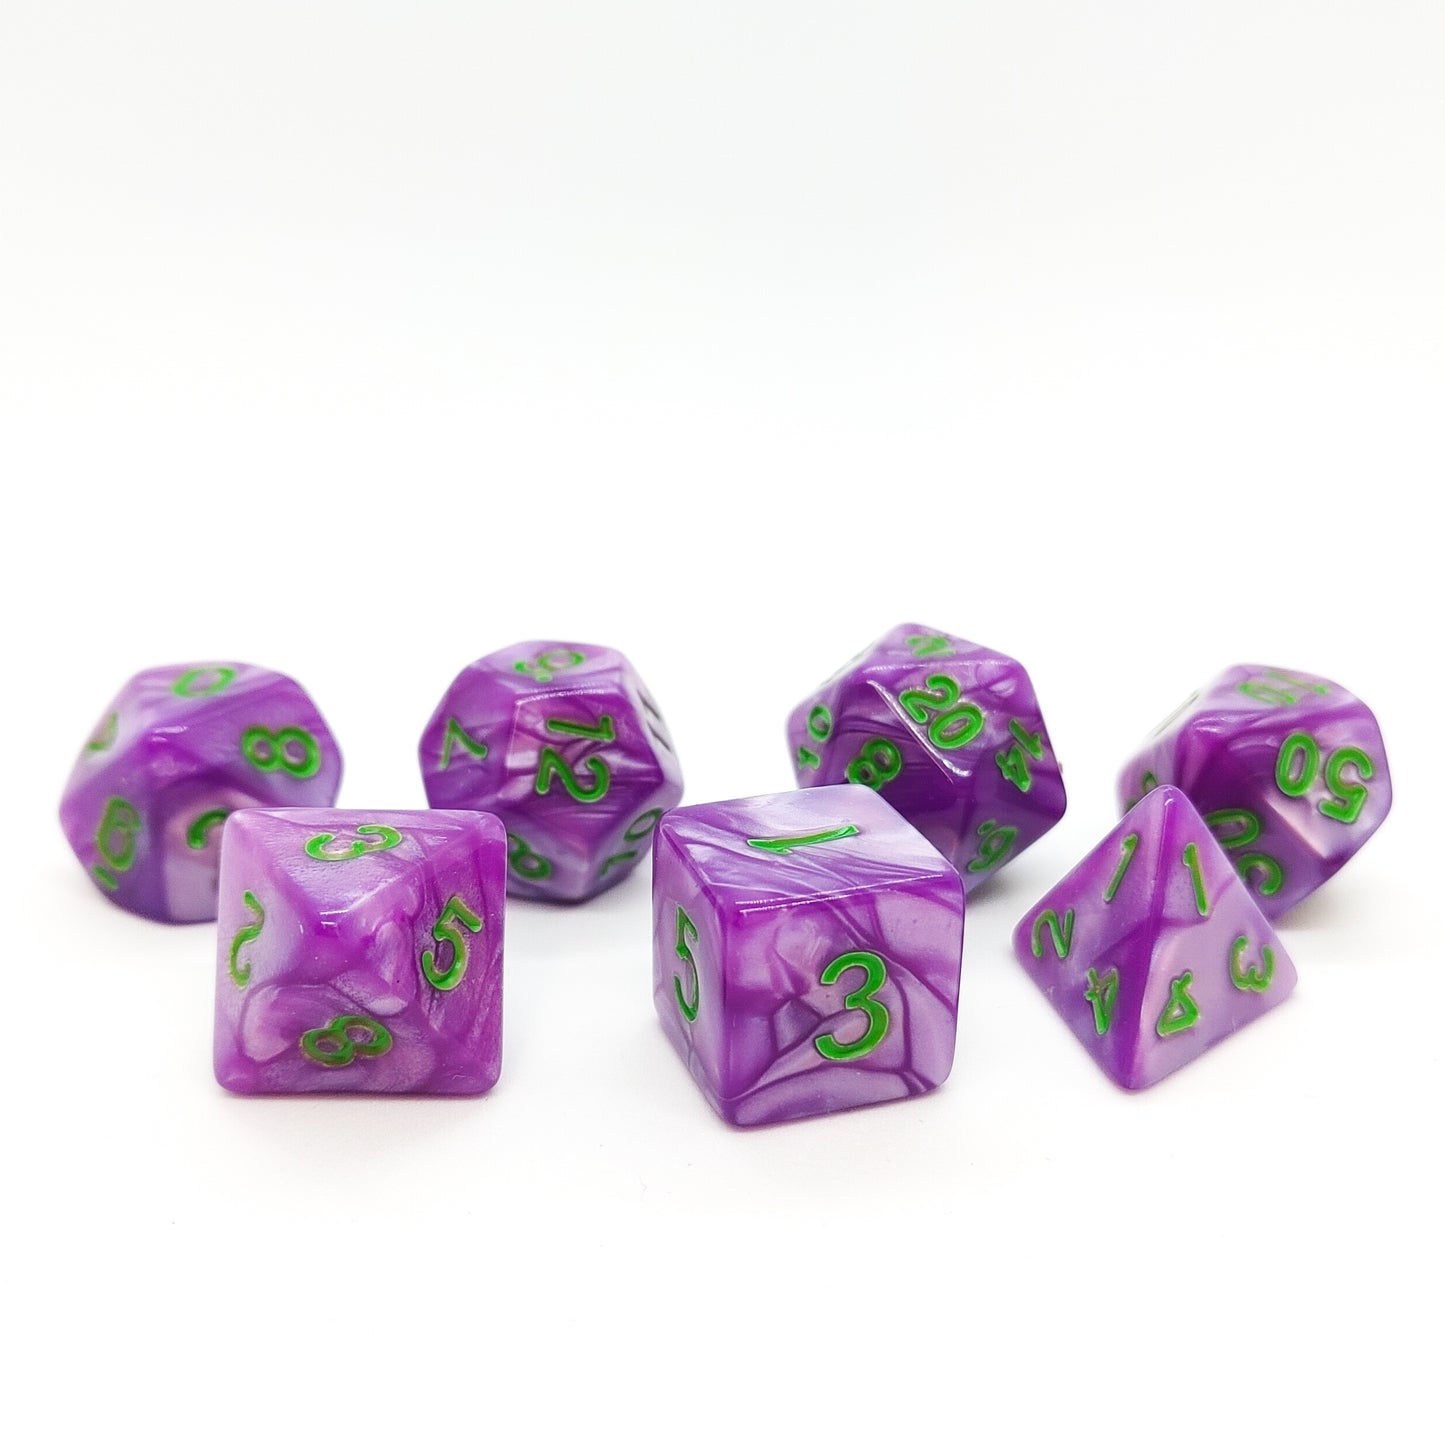 Pocket Jester - Purple Dice set - 7 piece RPG dice set